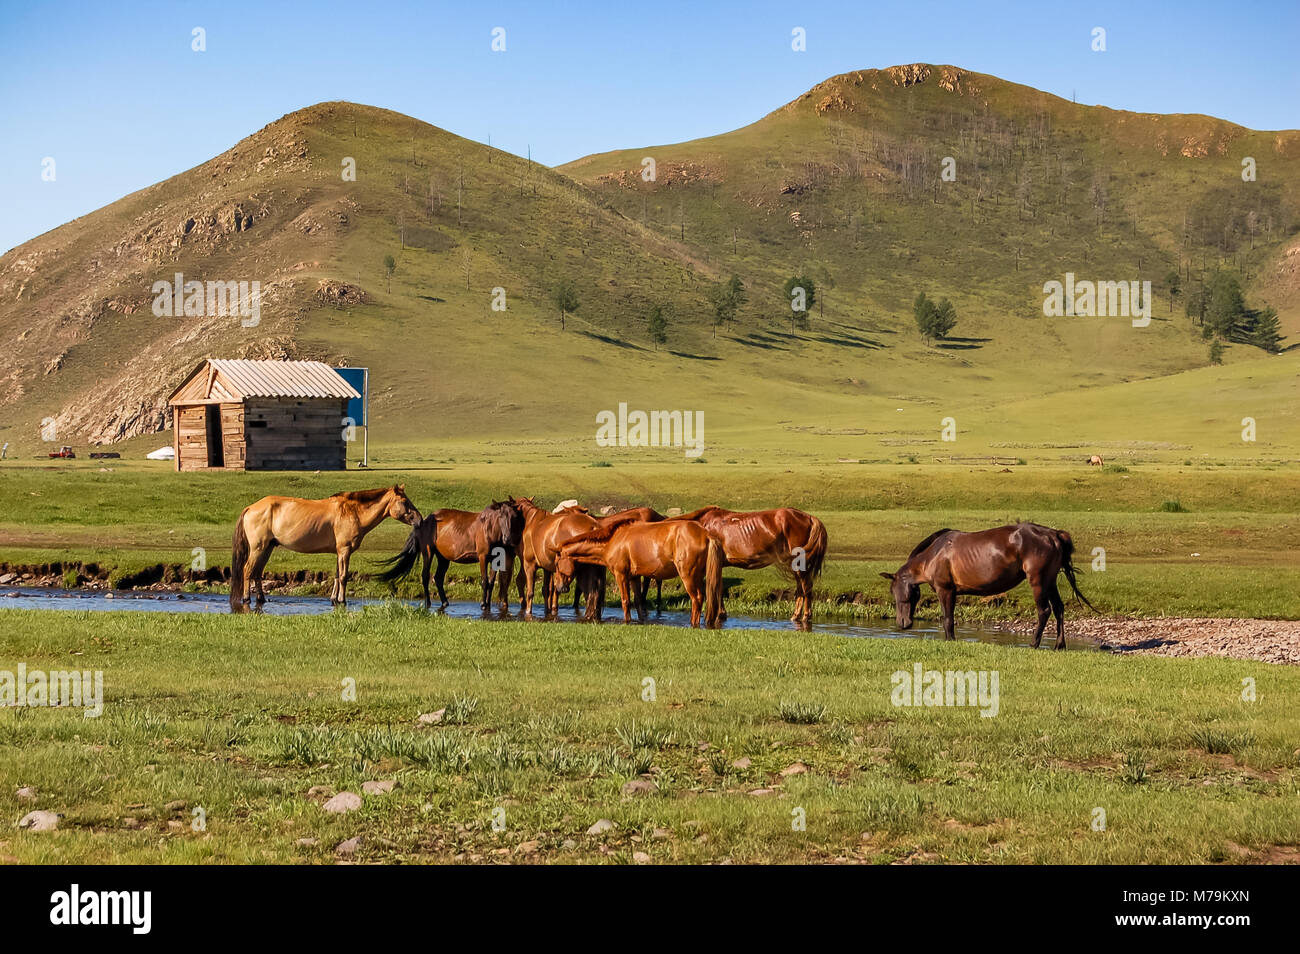 Troupeau de chevaux boire de l'eau sur le parc du centre de steppe mongole Banque D'Images